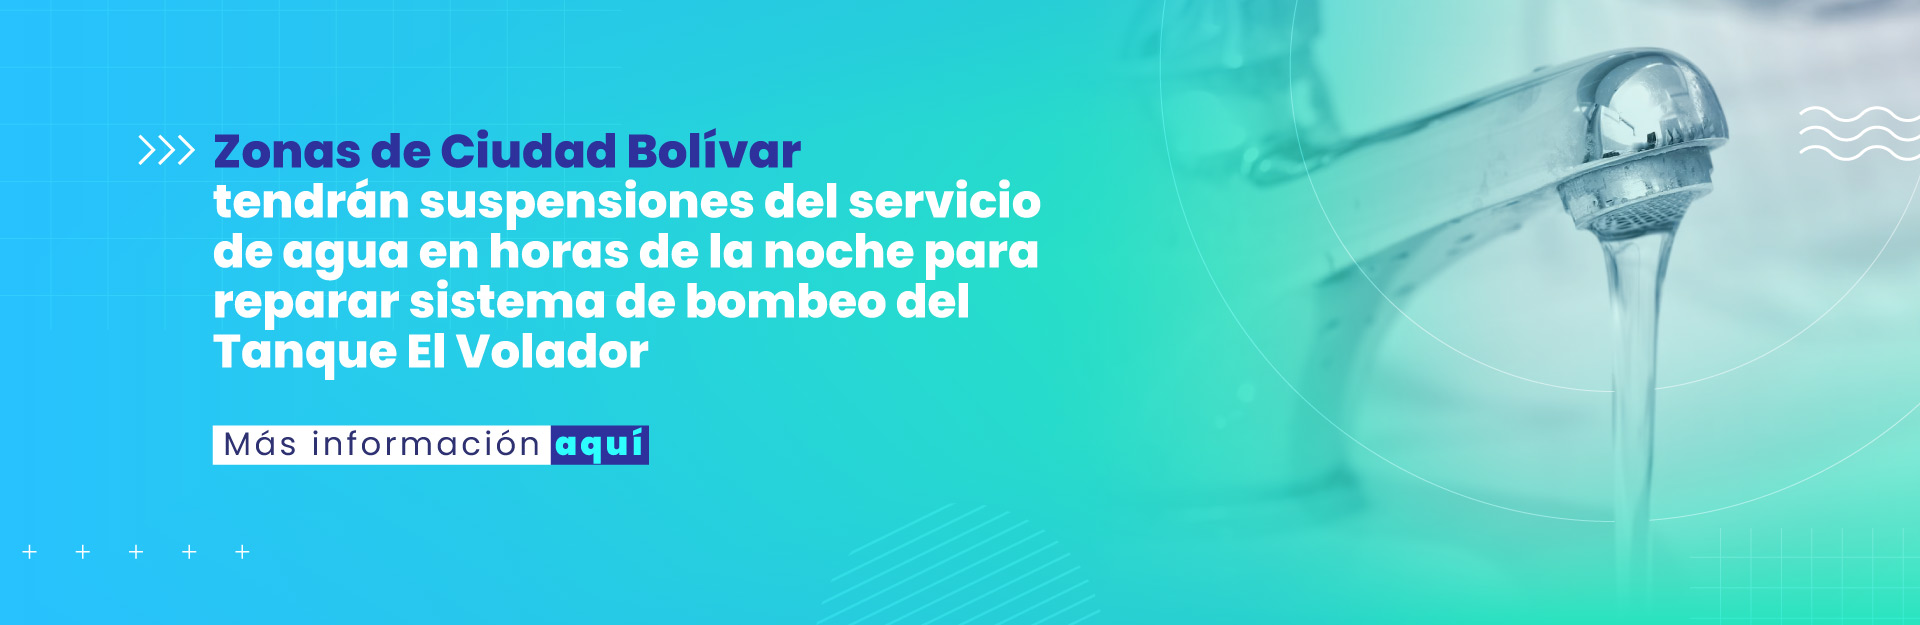 Zonas de Ciudad Bolívar tendrán suspensiones del servicio de agua en horas de la noche para reparar sistema de bombeo del Tanque El Volador